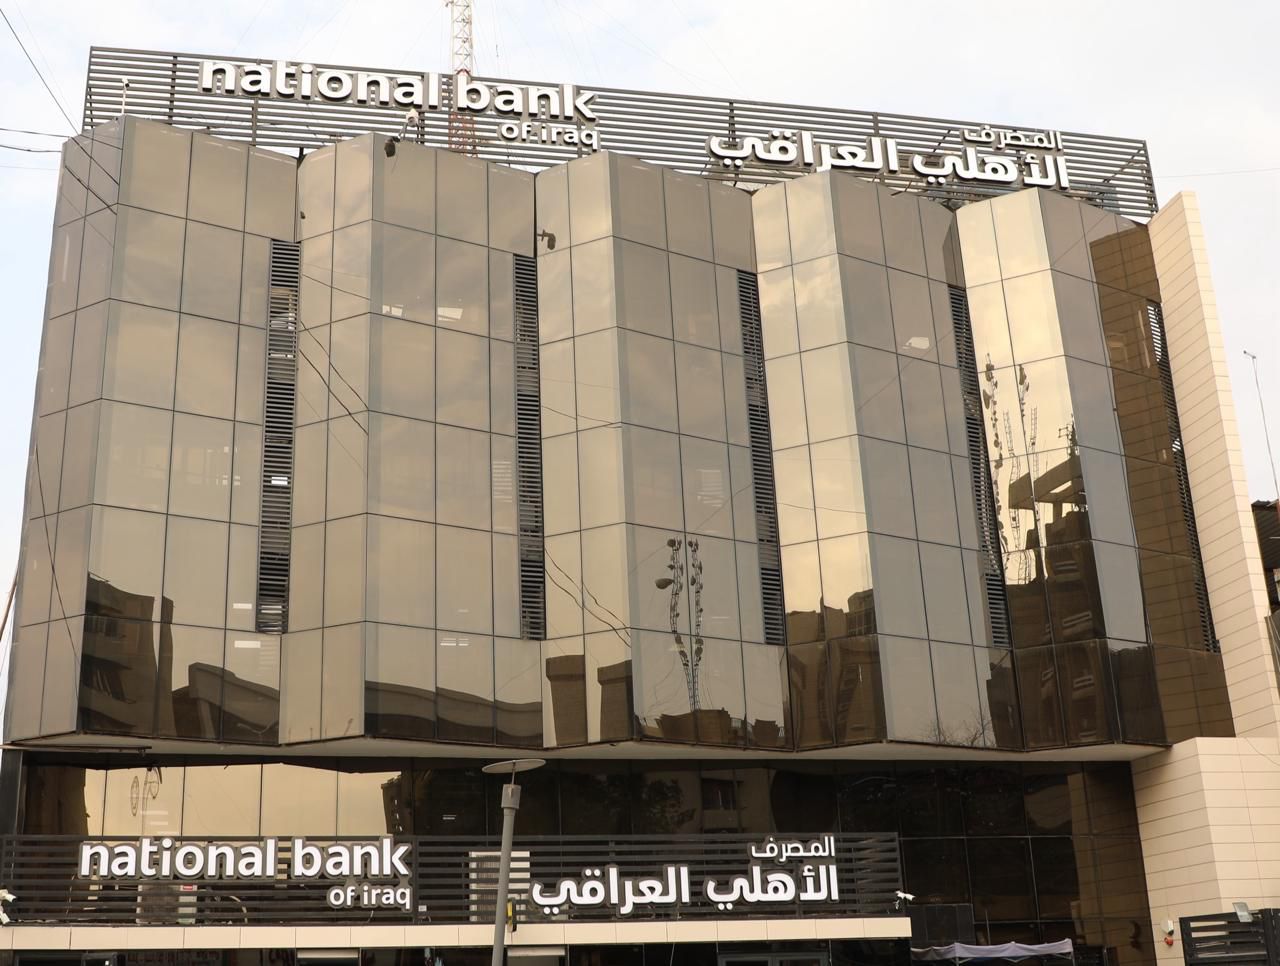 لأول مرة.. المصرف الأهلي العراقي يجري نقطة تحول استثمارية بقيمة 25 مليار دينار  